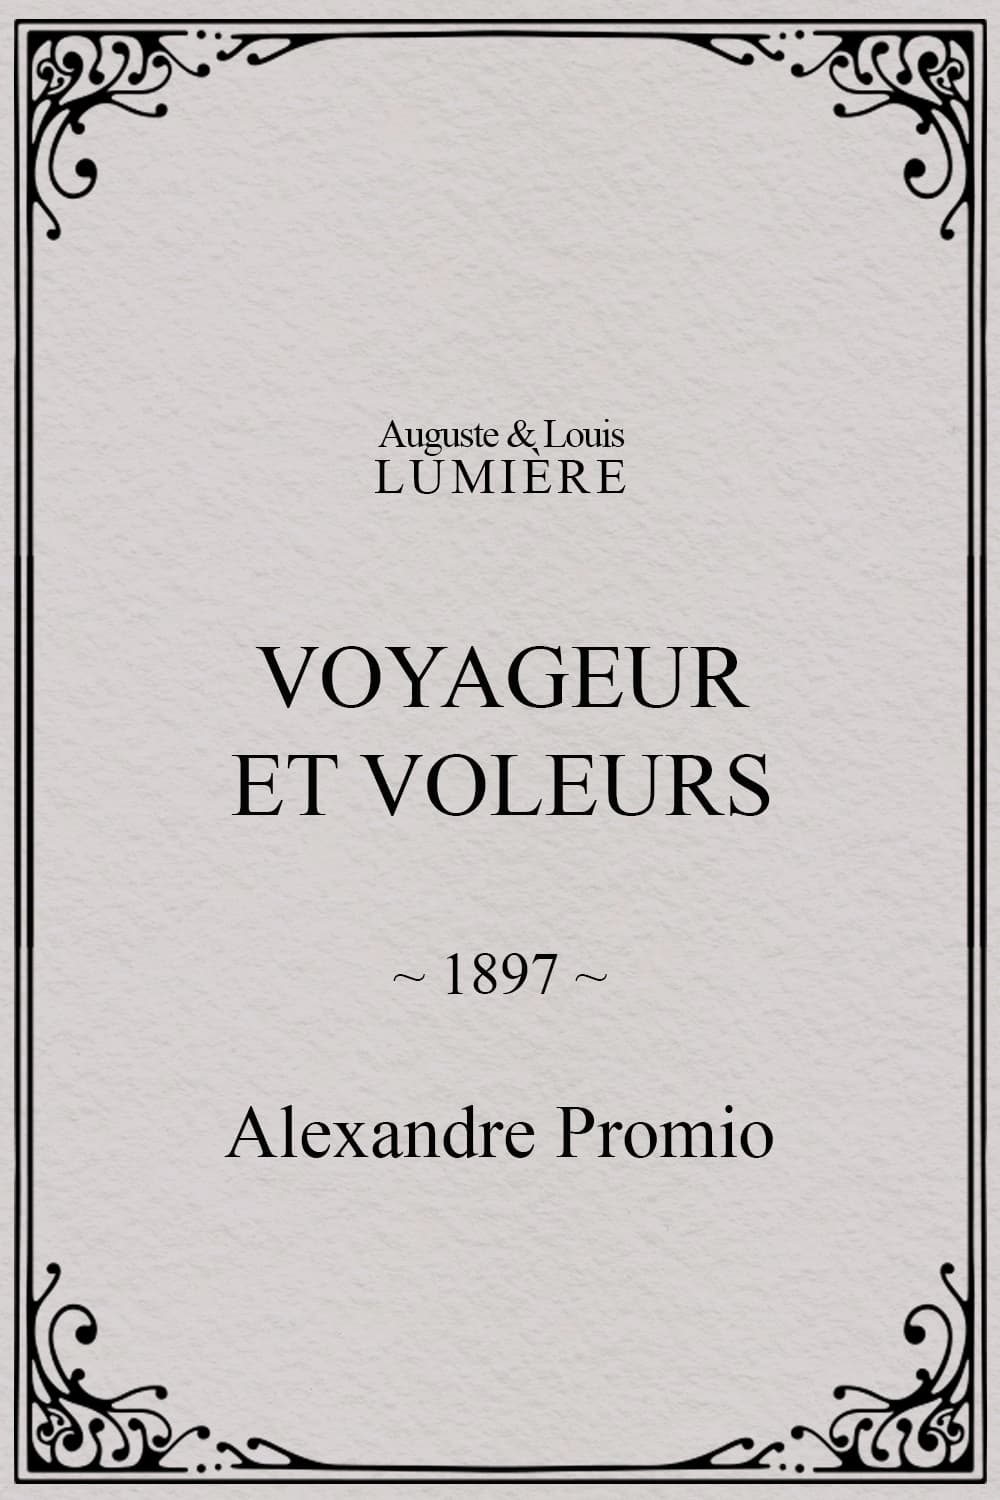 Voyageur et voleurs (1897)